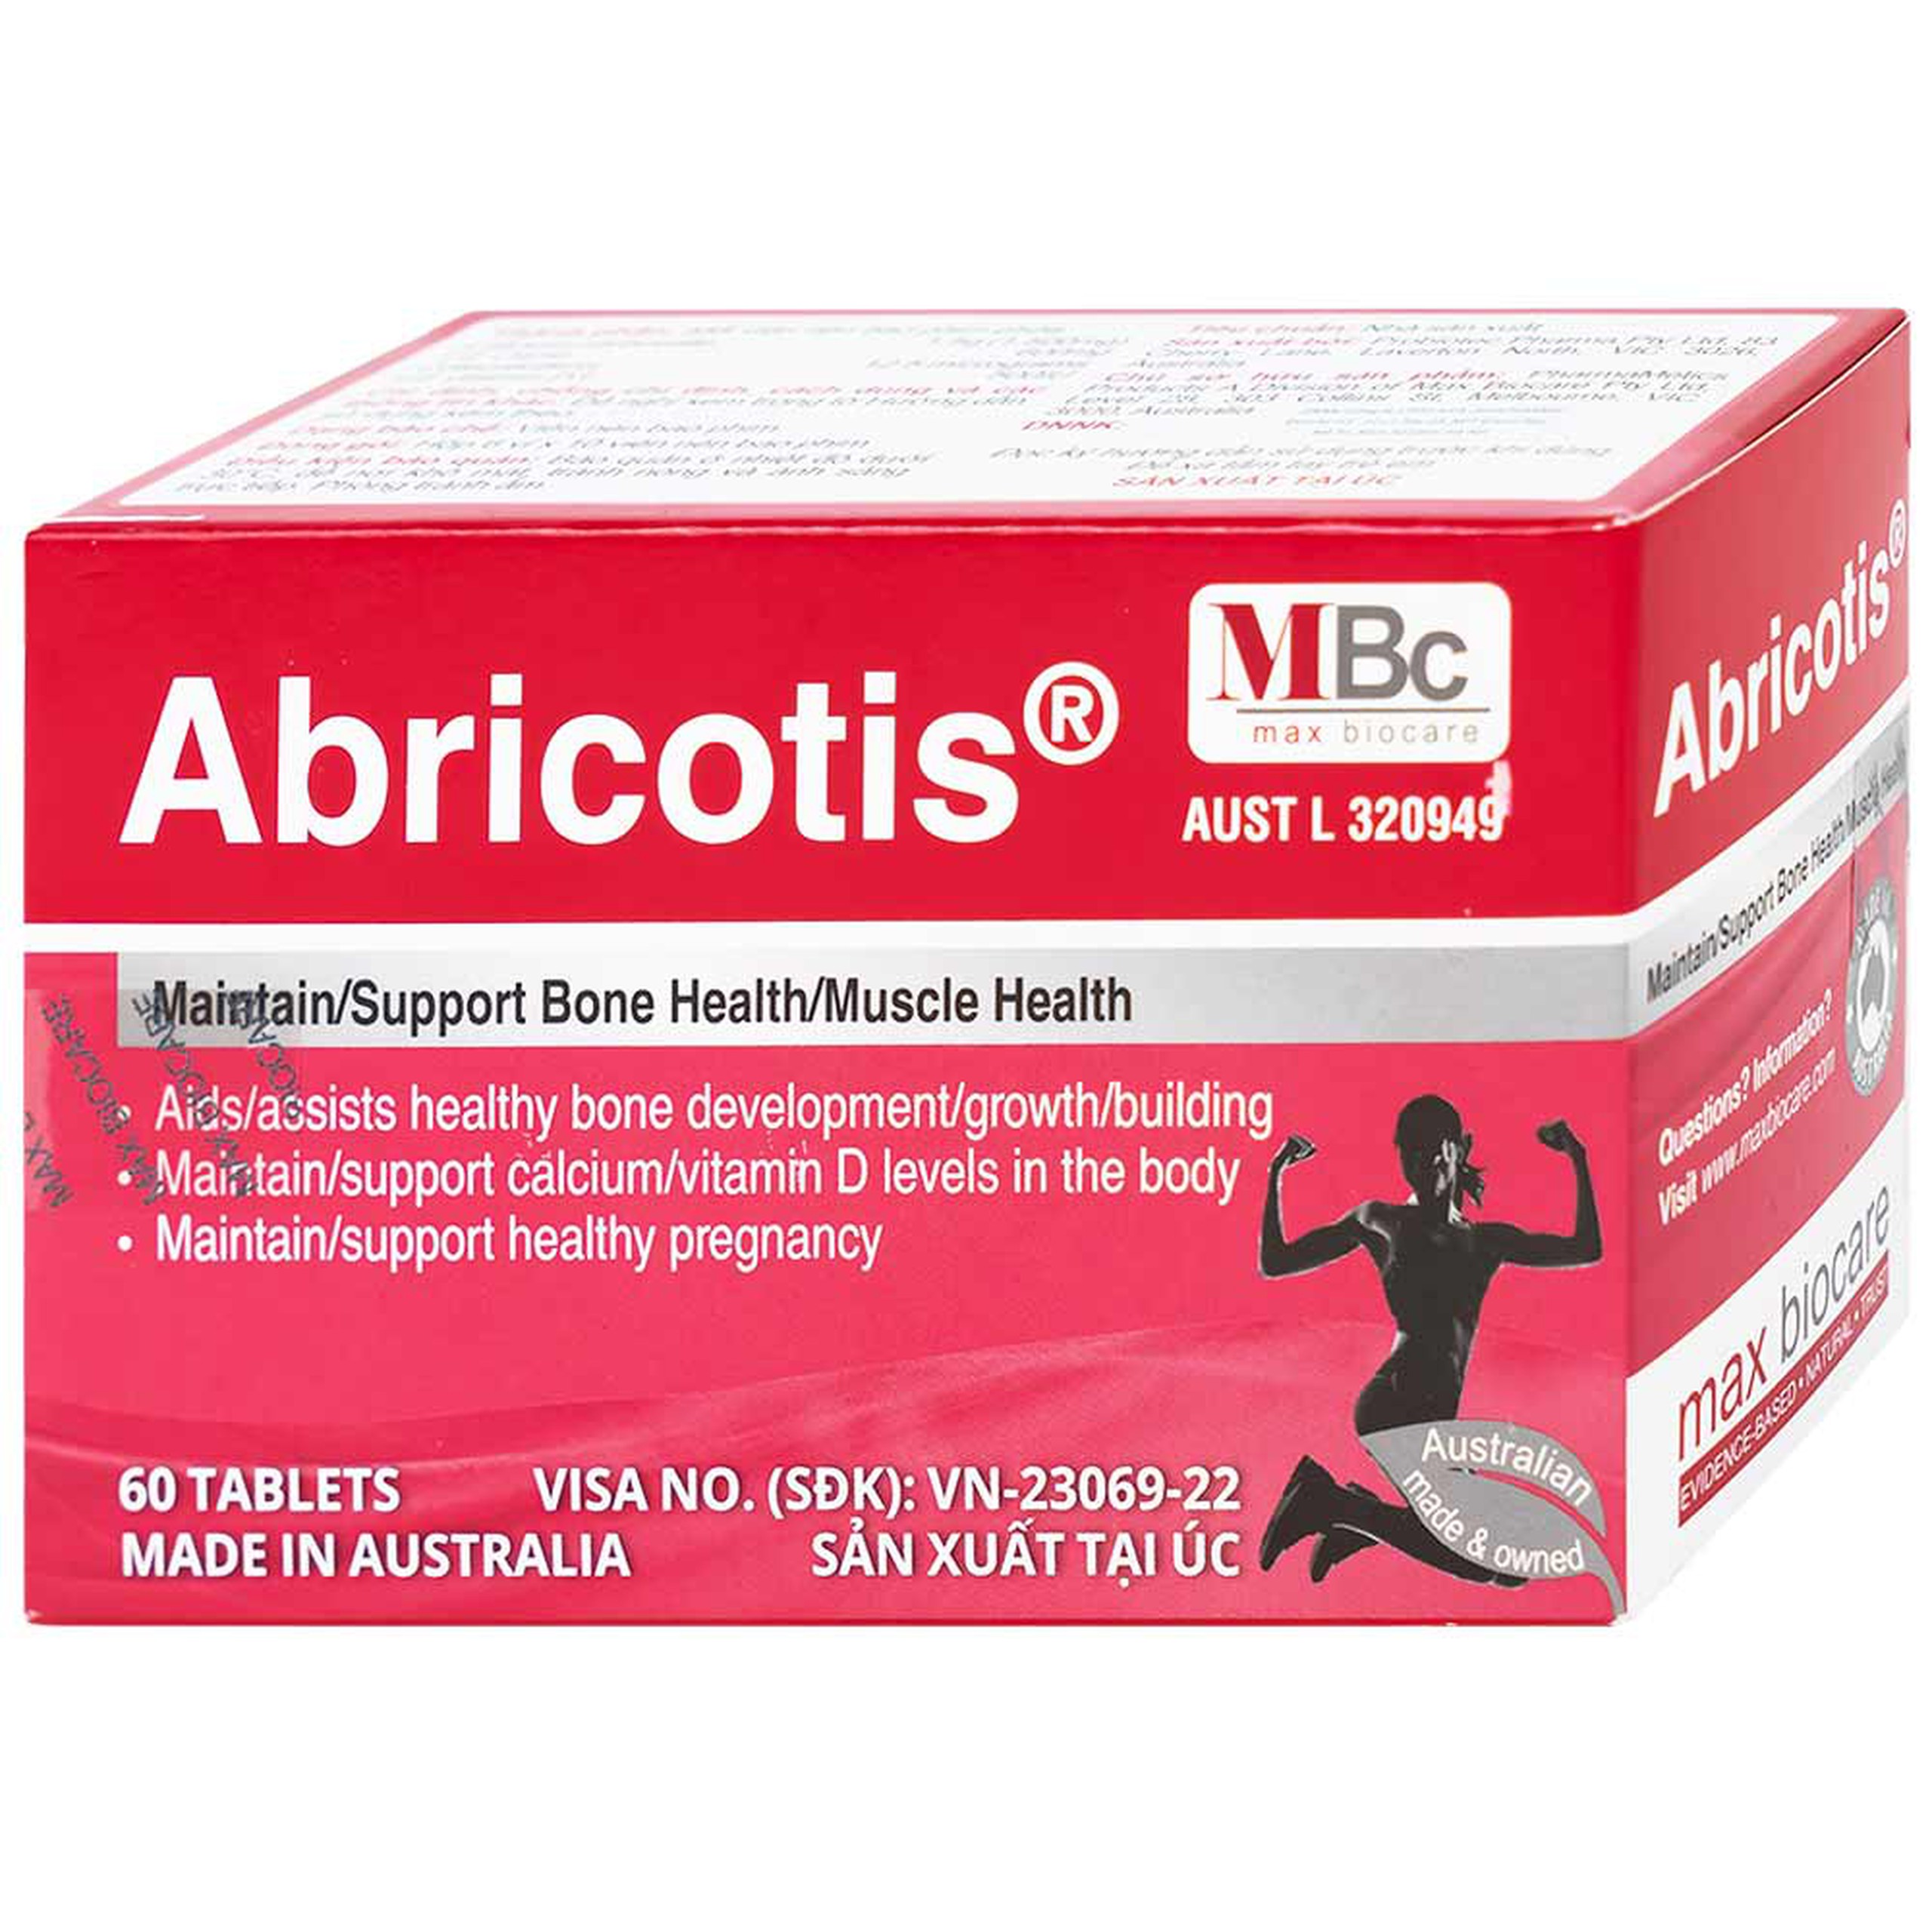 Thuốc Abricotis Probiotec hỗ trợ sức khỏe xương, cơ bắp, bổ sung canxi (6 vỉ x 10 viên)